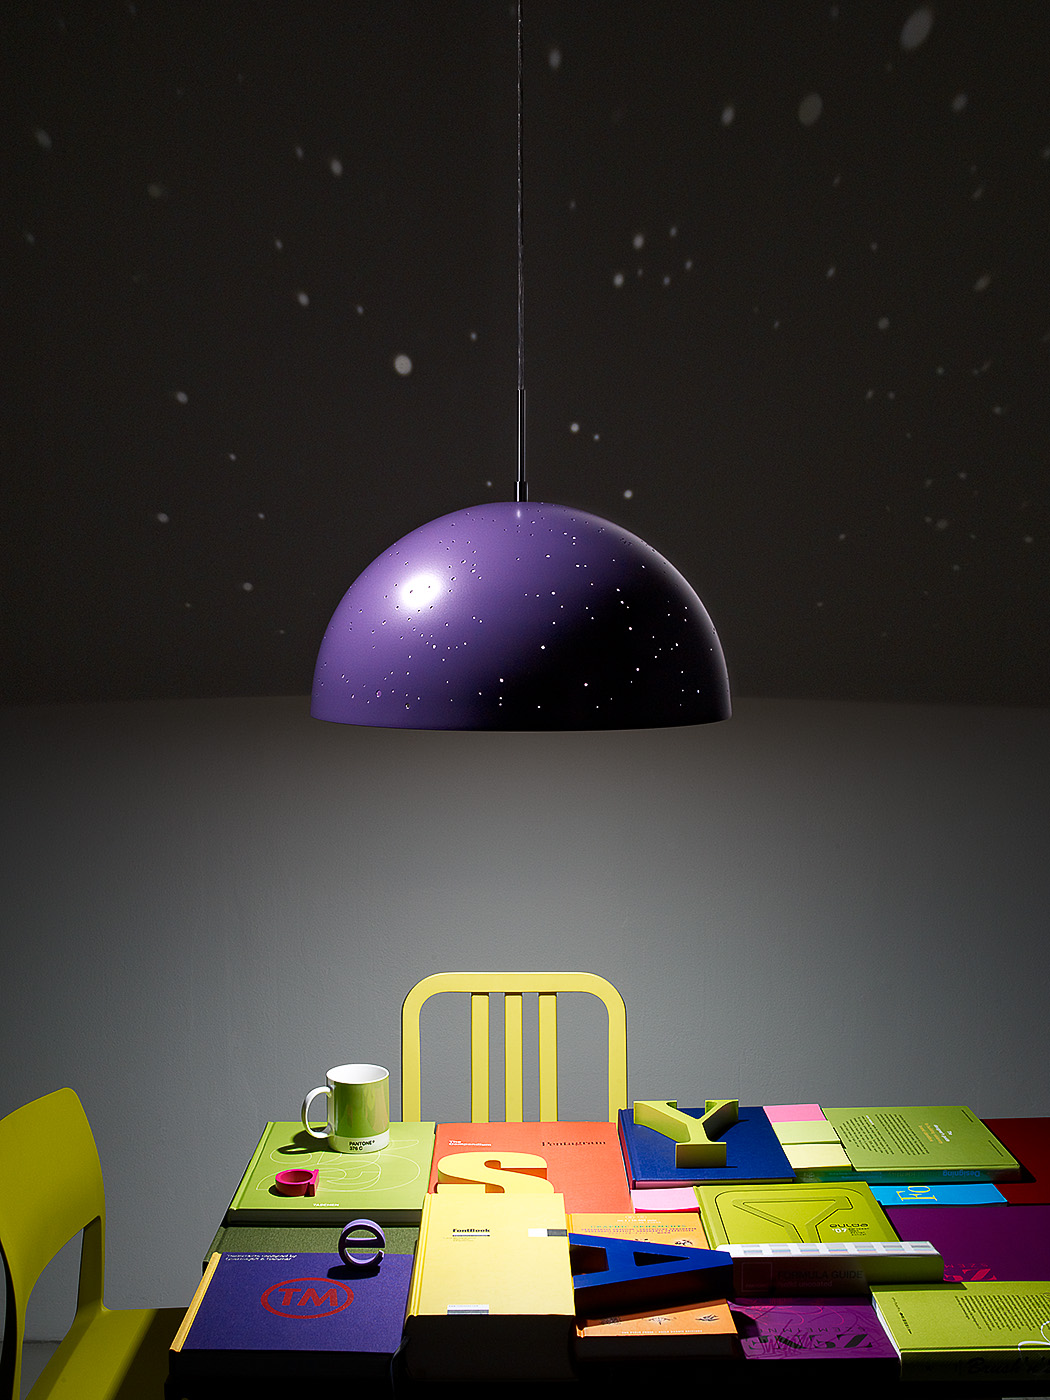  client: Starry Light | design by Anna Farkas  